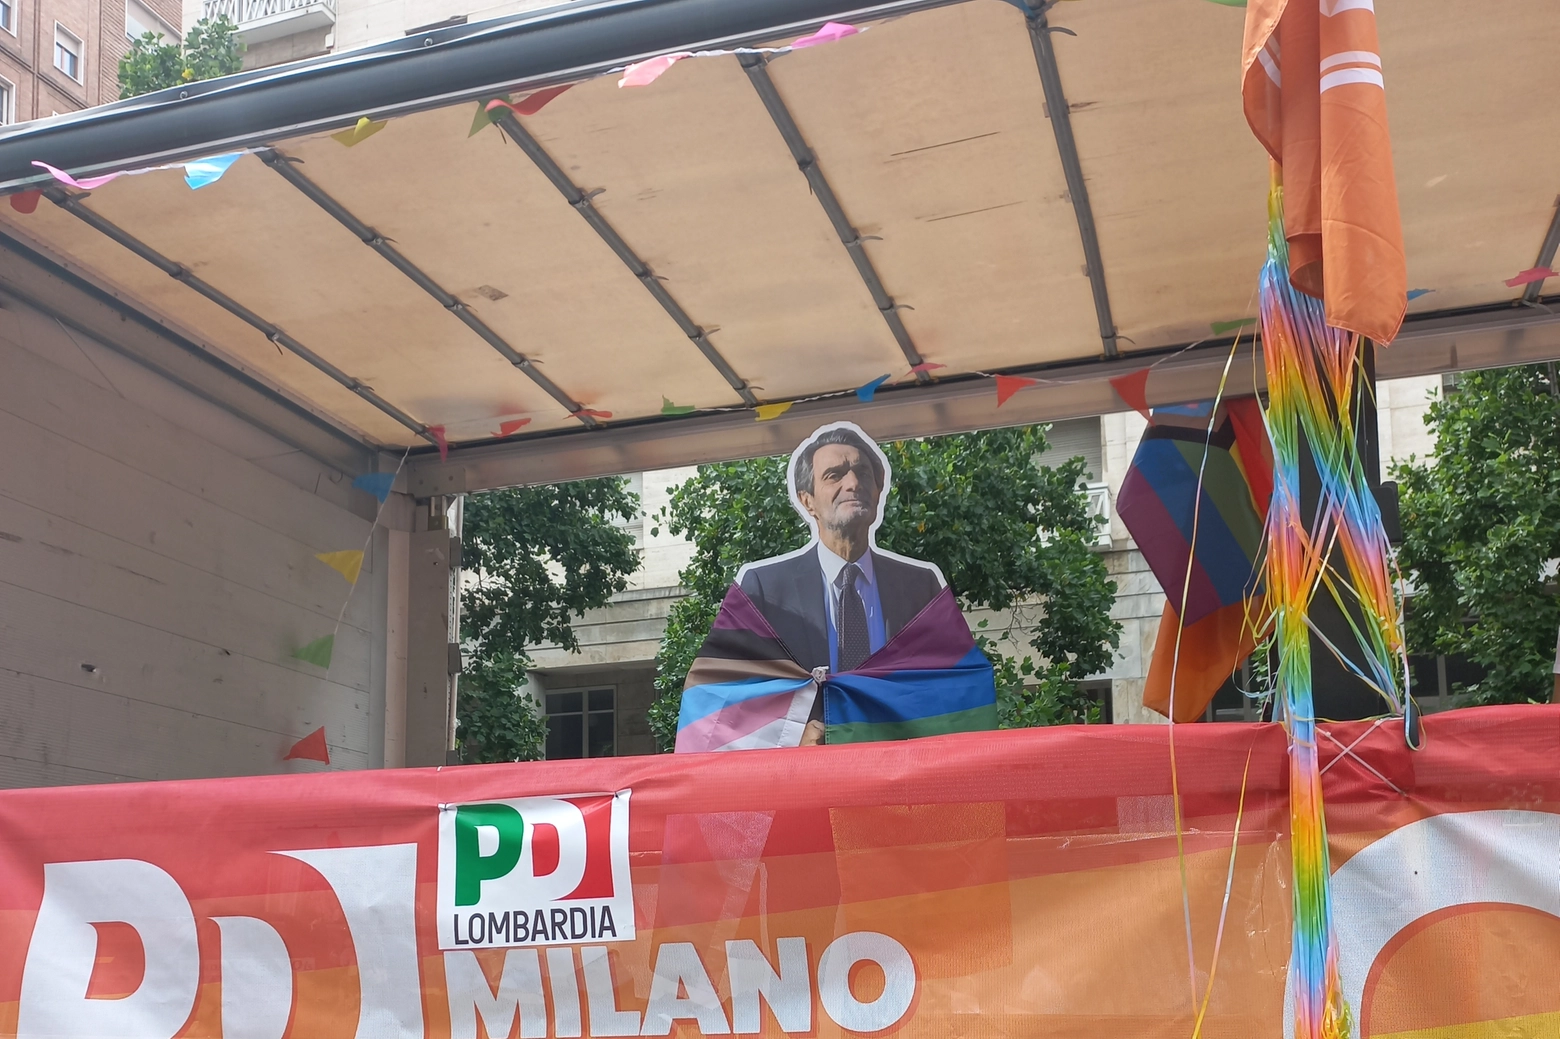 Il cartonato di Attilio Fontana sul carro del Pd al Pride